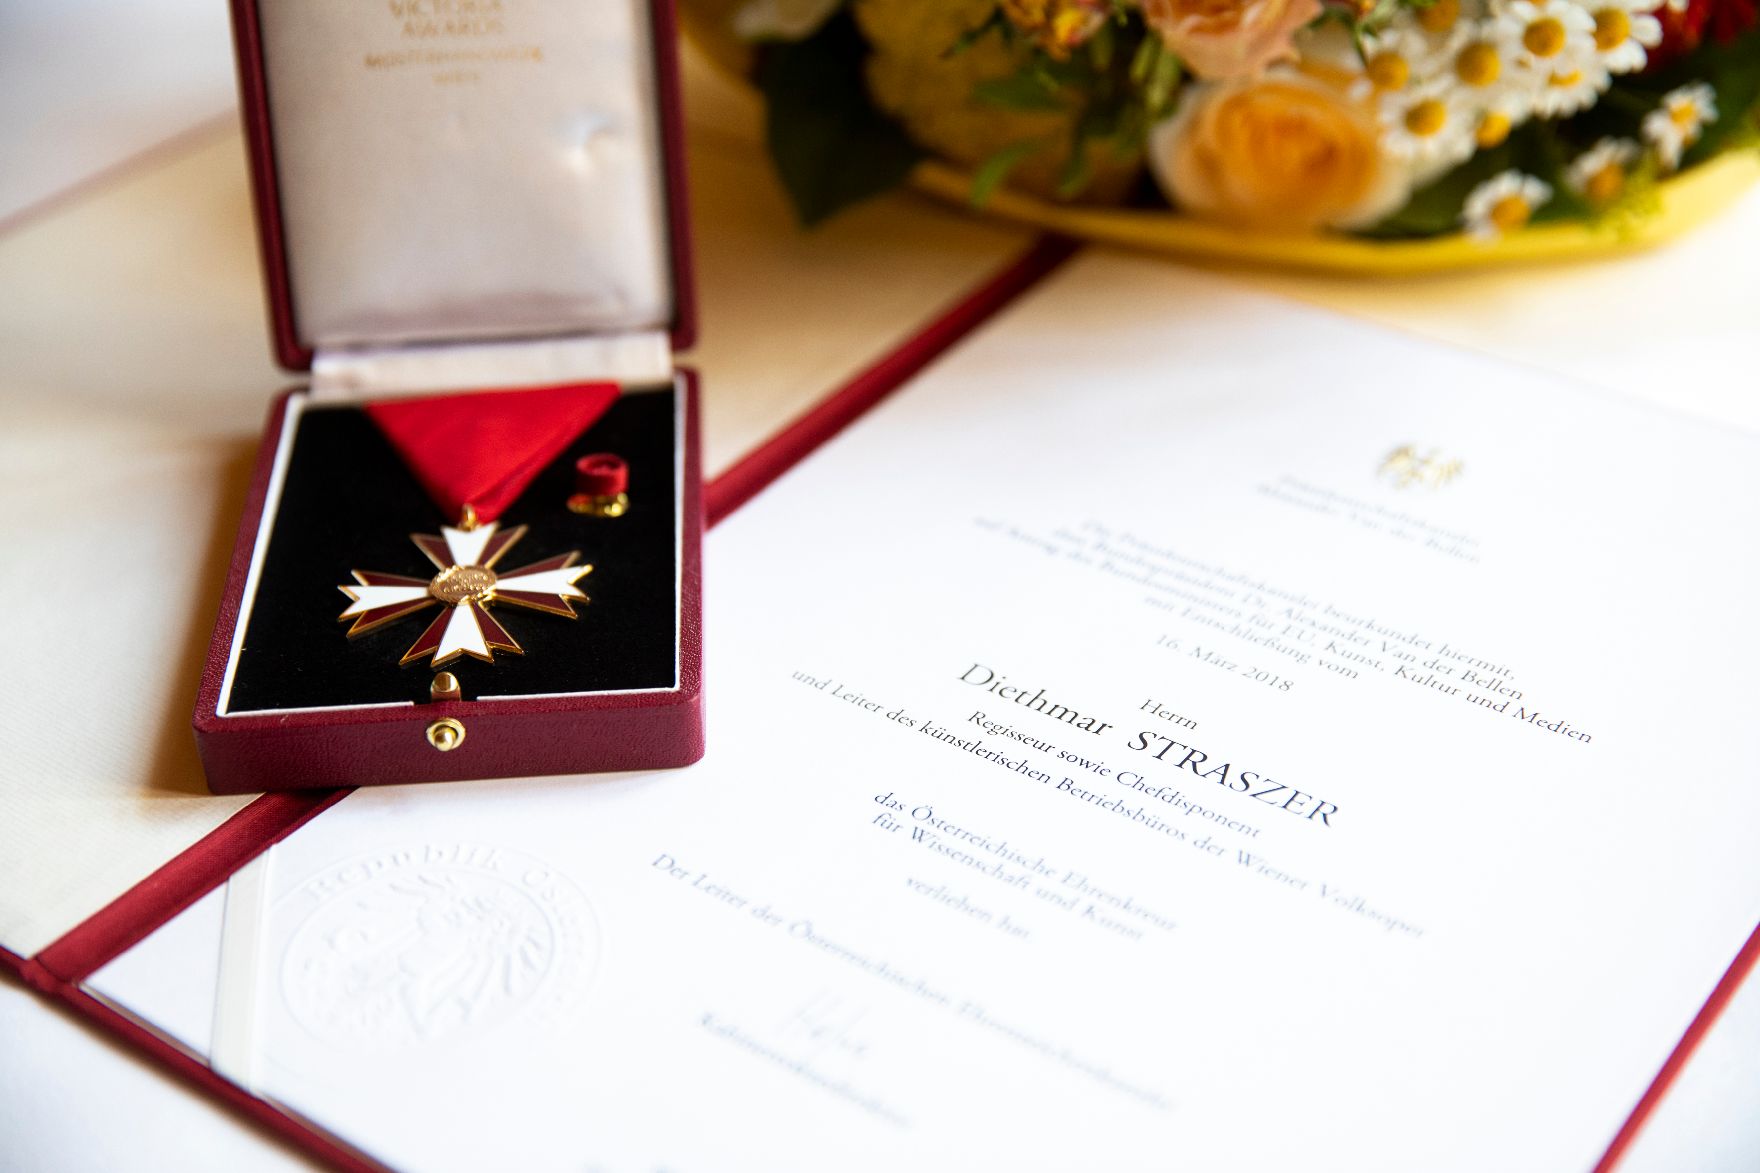 Am 26. Juni 2018 wurde das Österreichische Ehrenkreuz für Wissenschaft und Kunst an Diethmar Straßer überreicht.